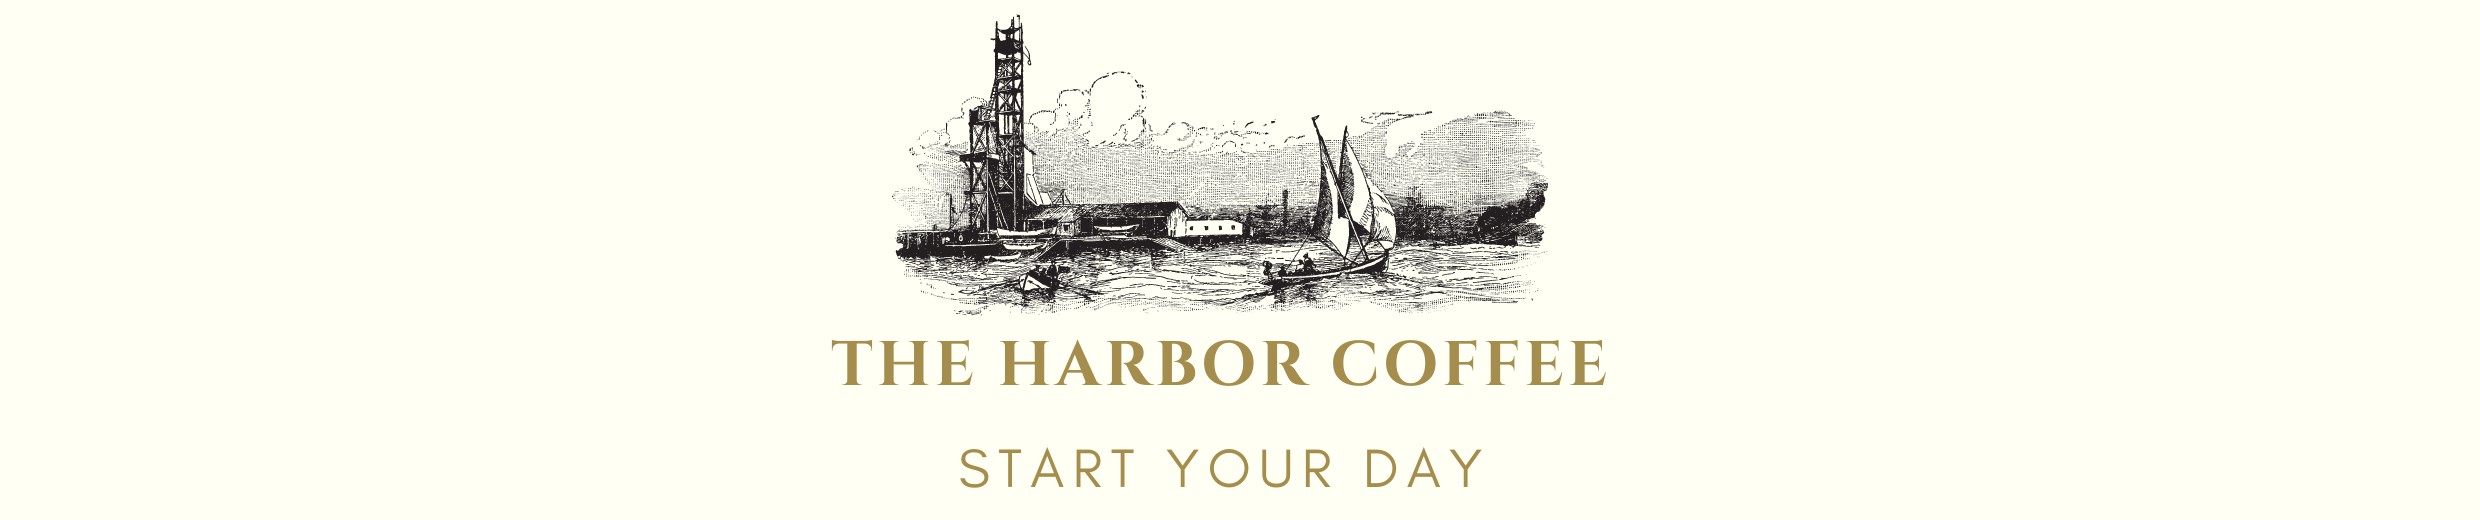 أكواد خصم و عروض Harbor coffee | متجر مرفأ القهوه